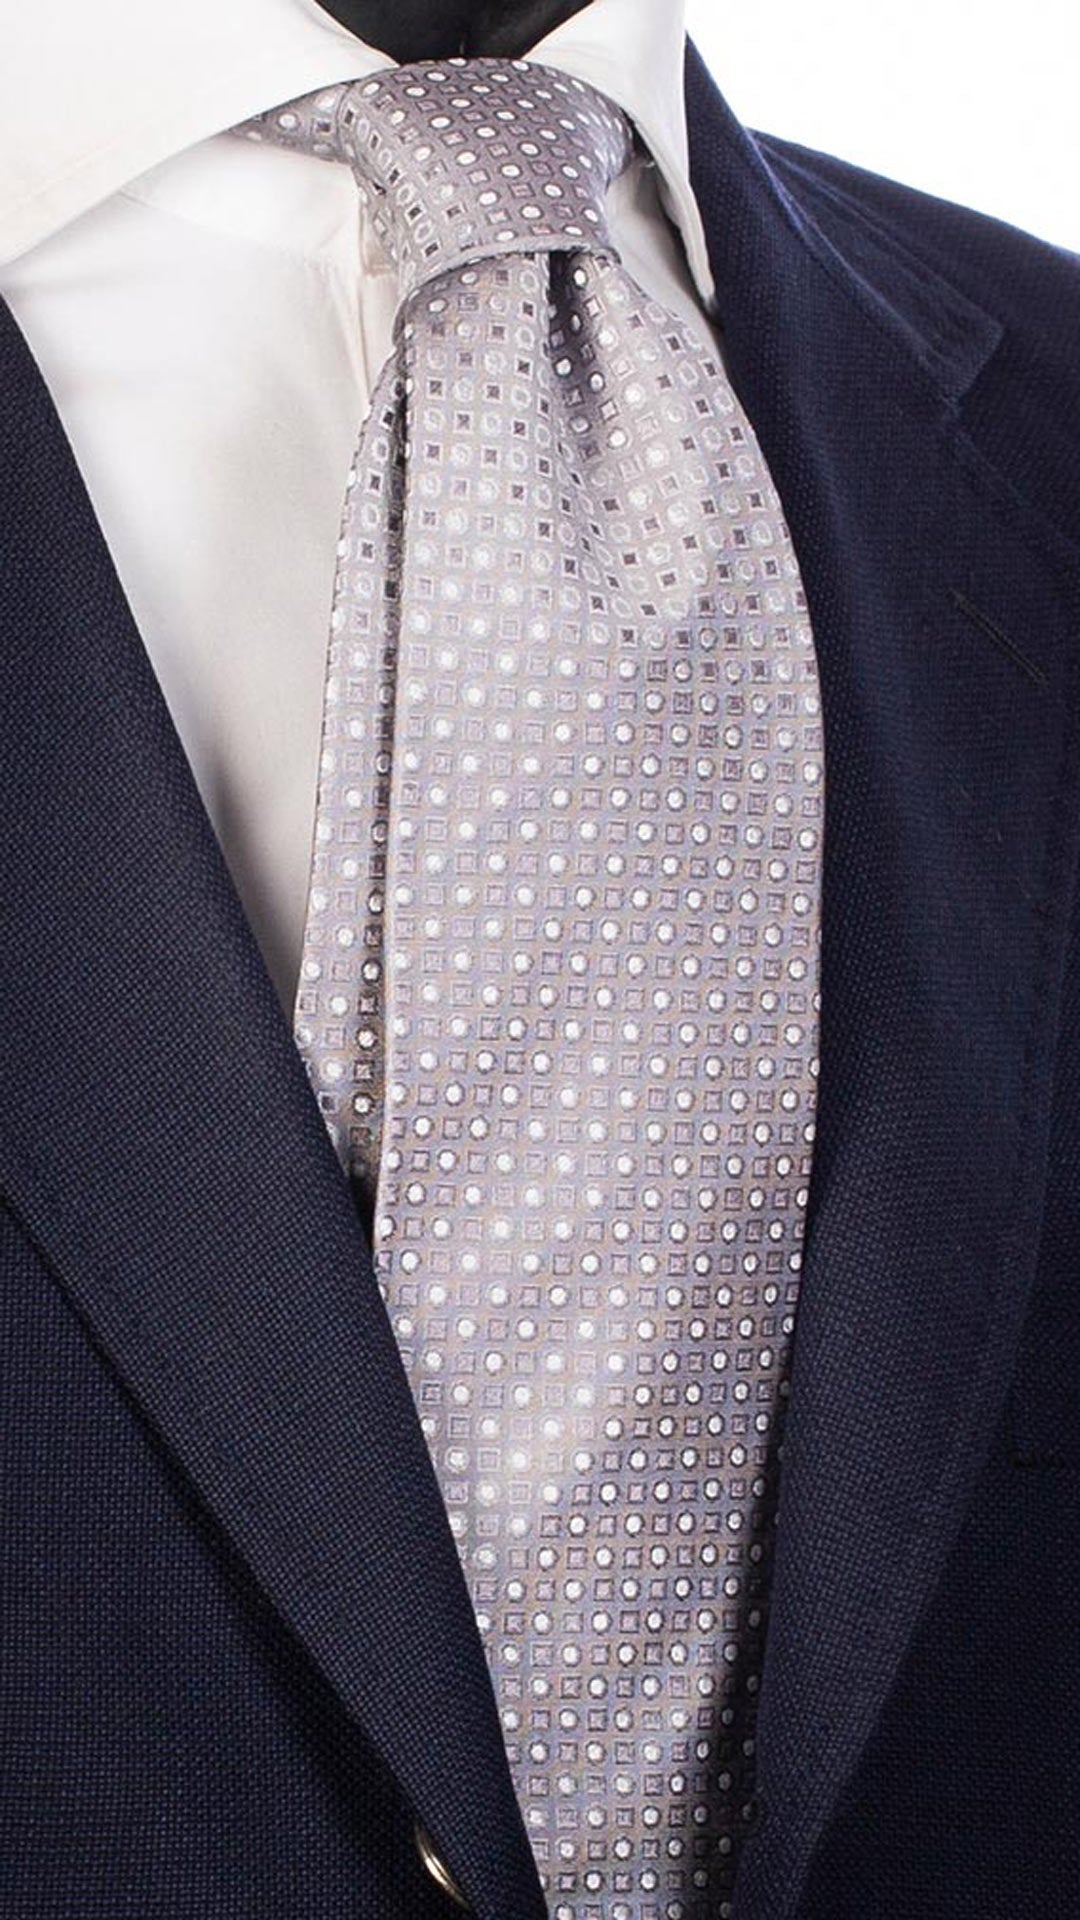 Cravatta da Cerimonia di Seta Grigia Fantasia Tono su Tono Bianco Cangiante CY4724 Made in Italy Graffeo Cravatte